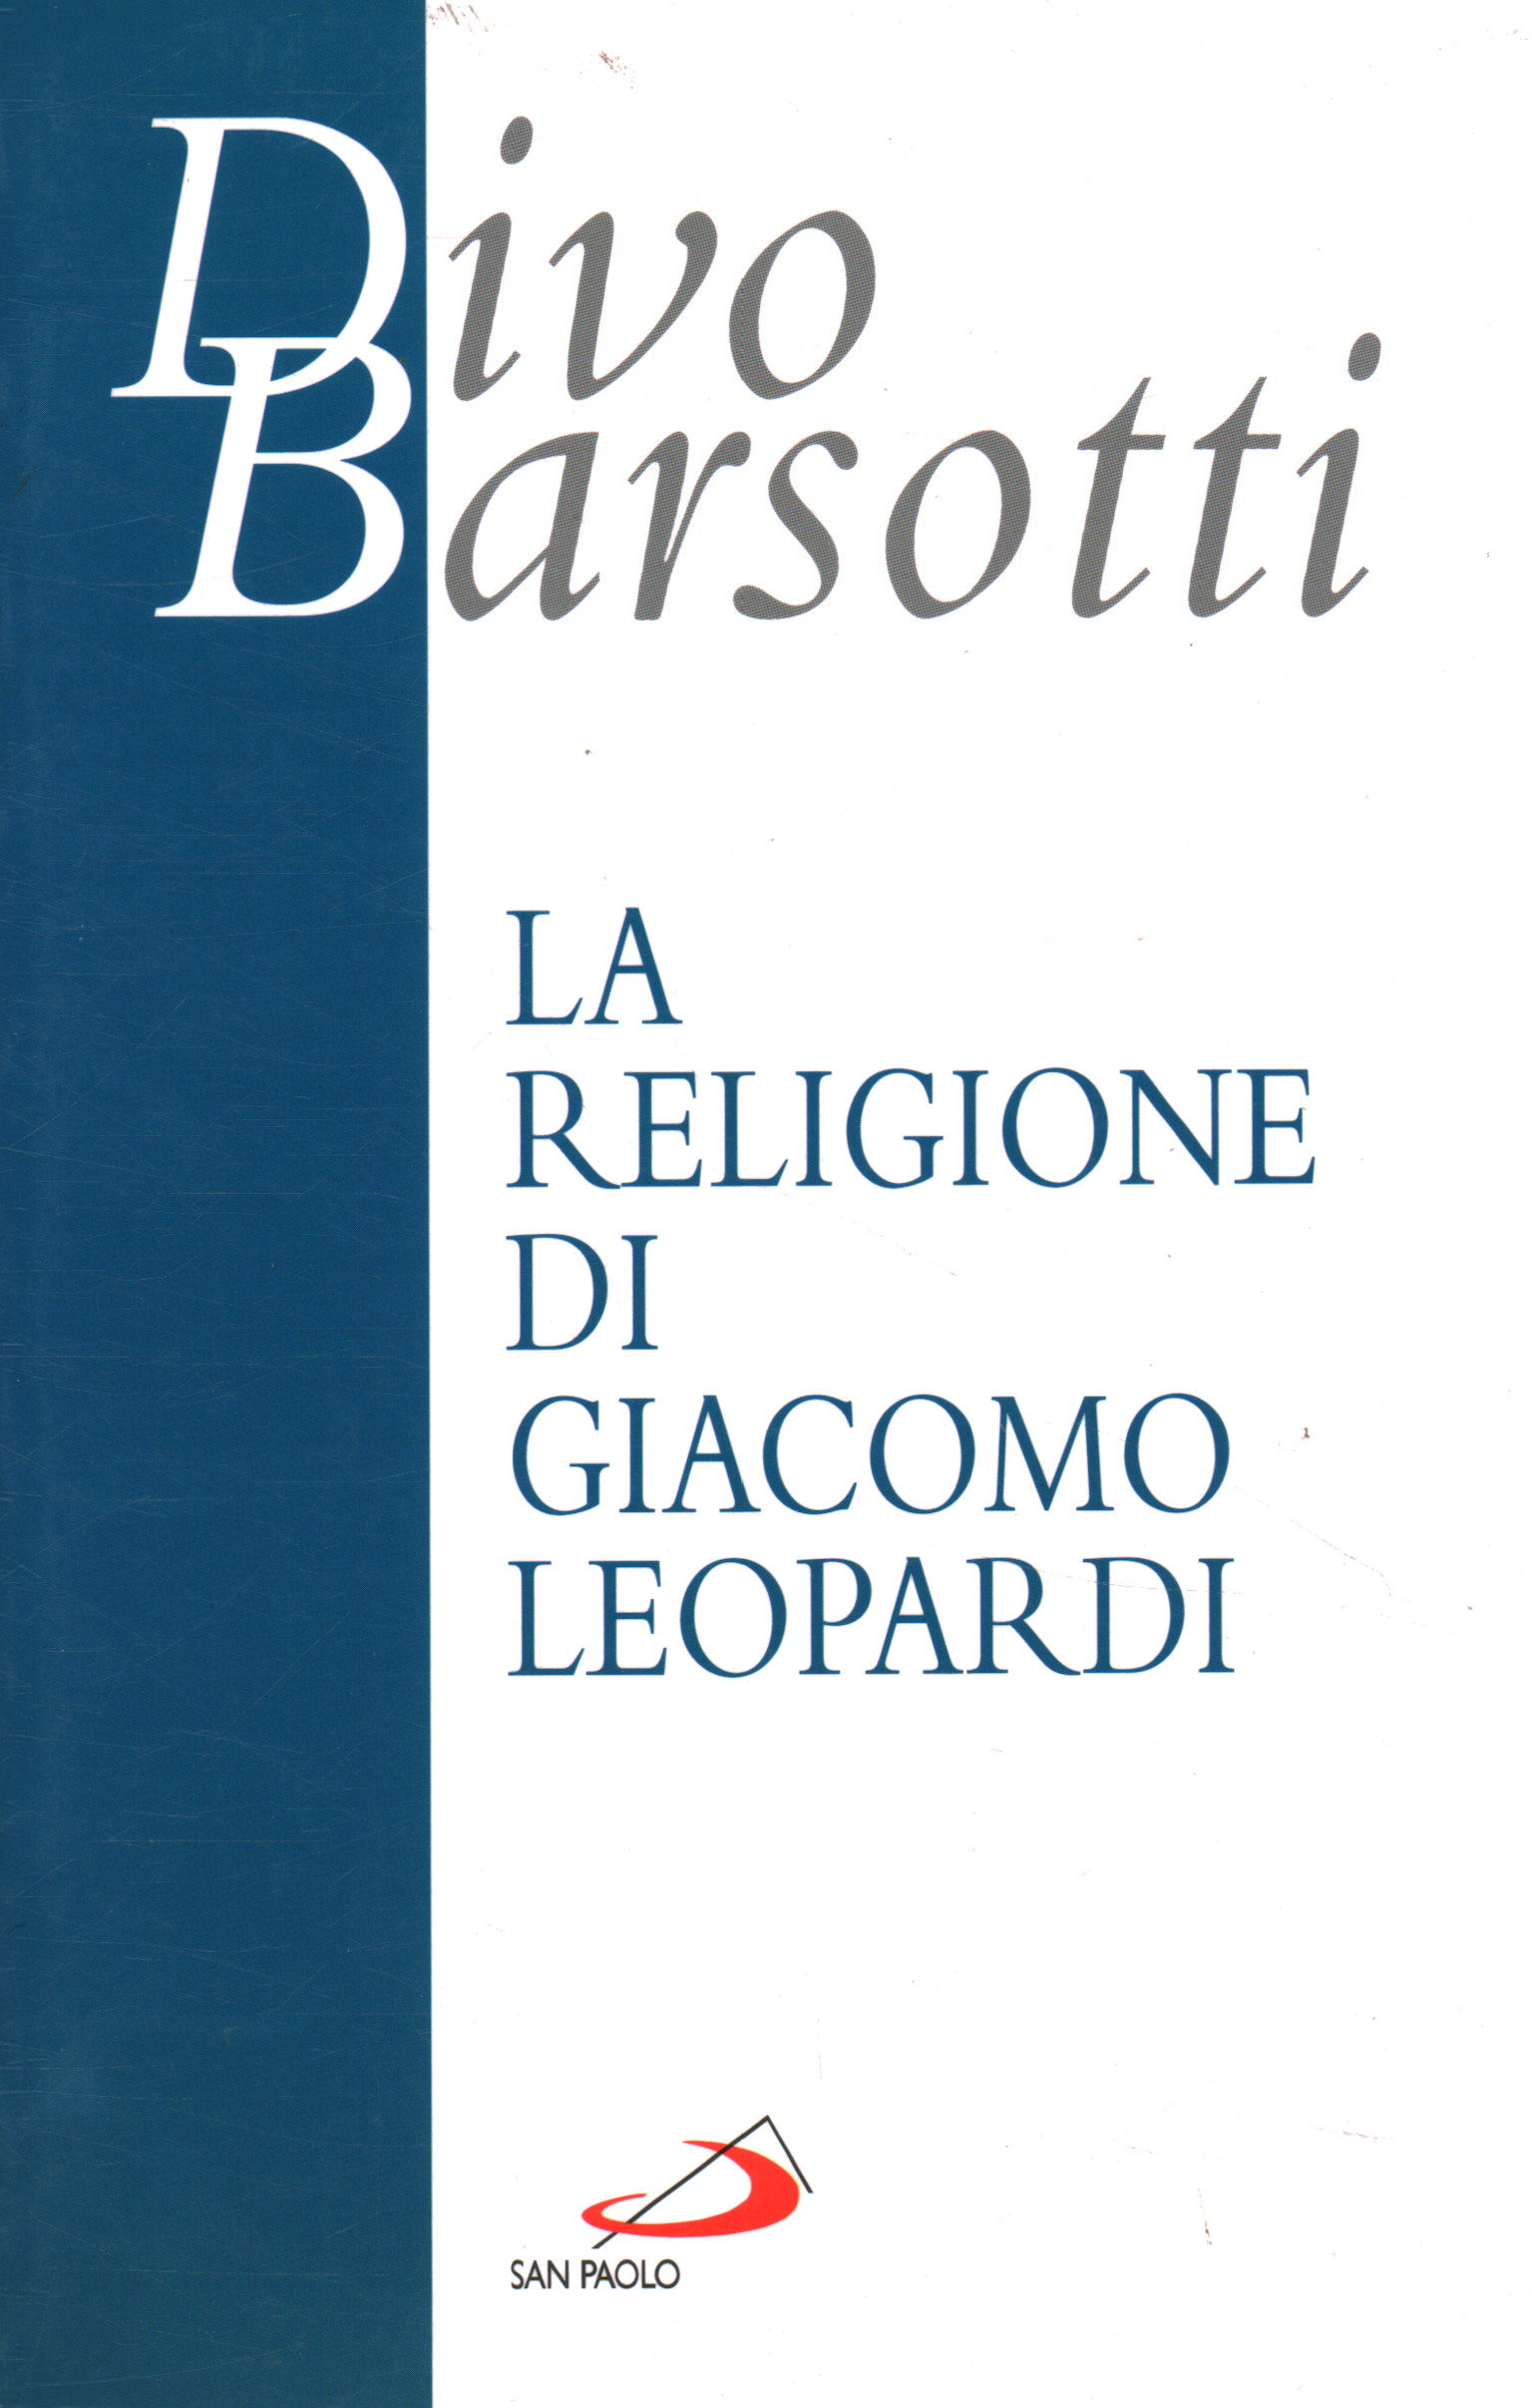 The religion of Giacomo Leopardi